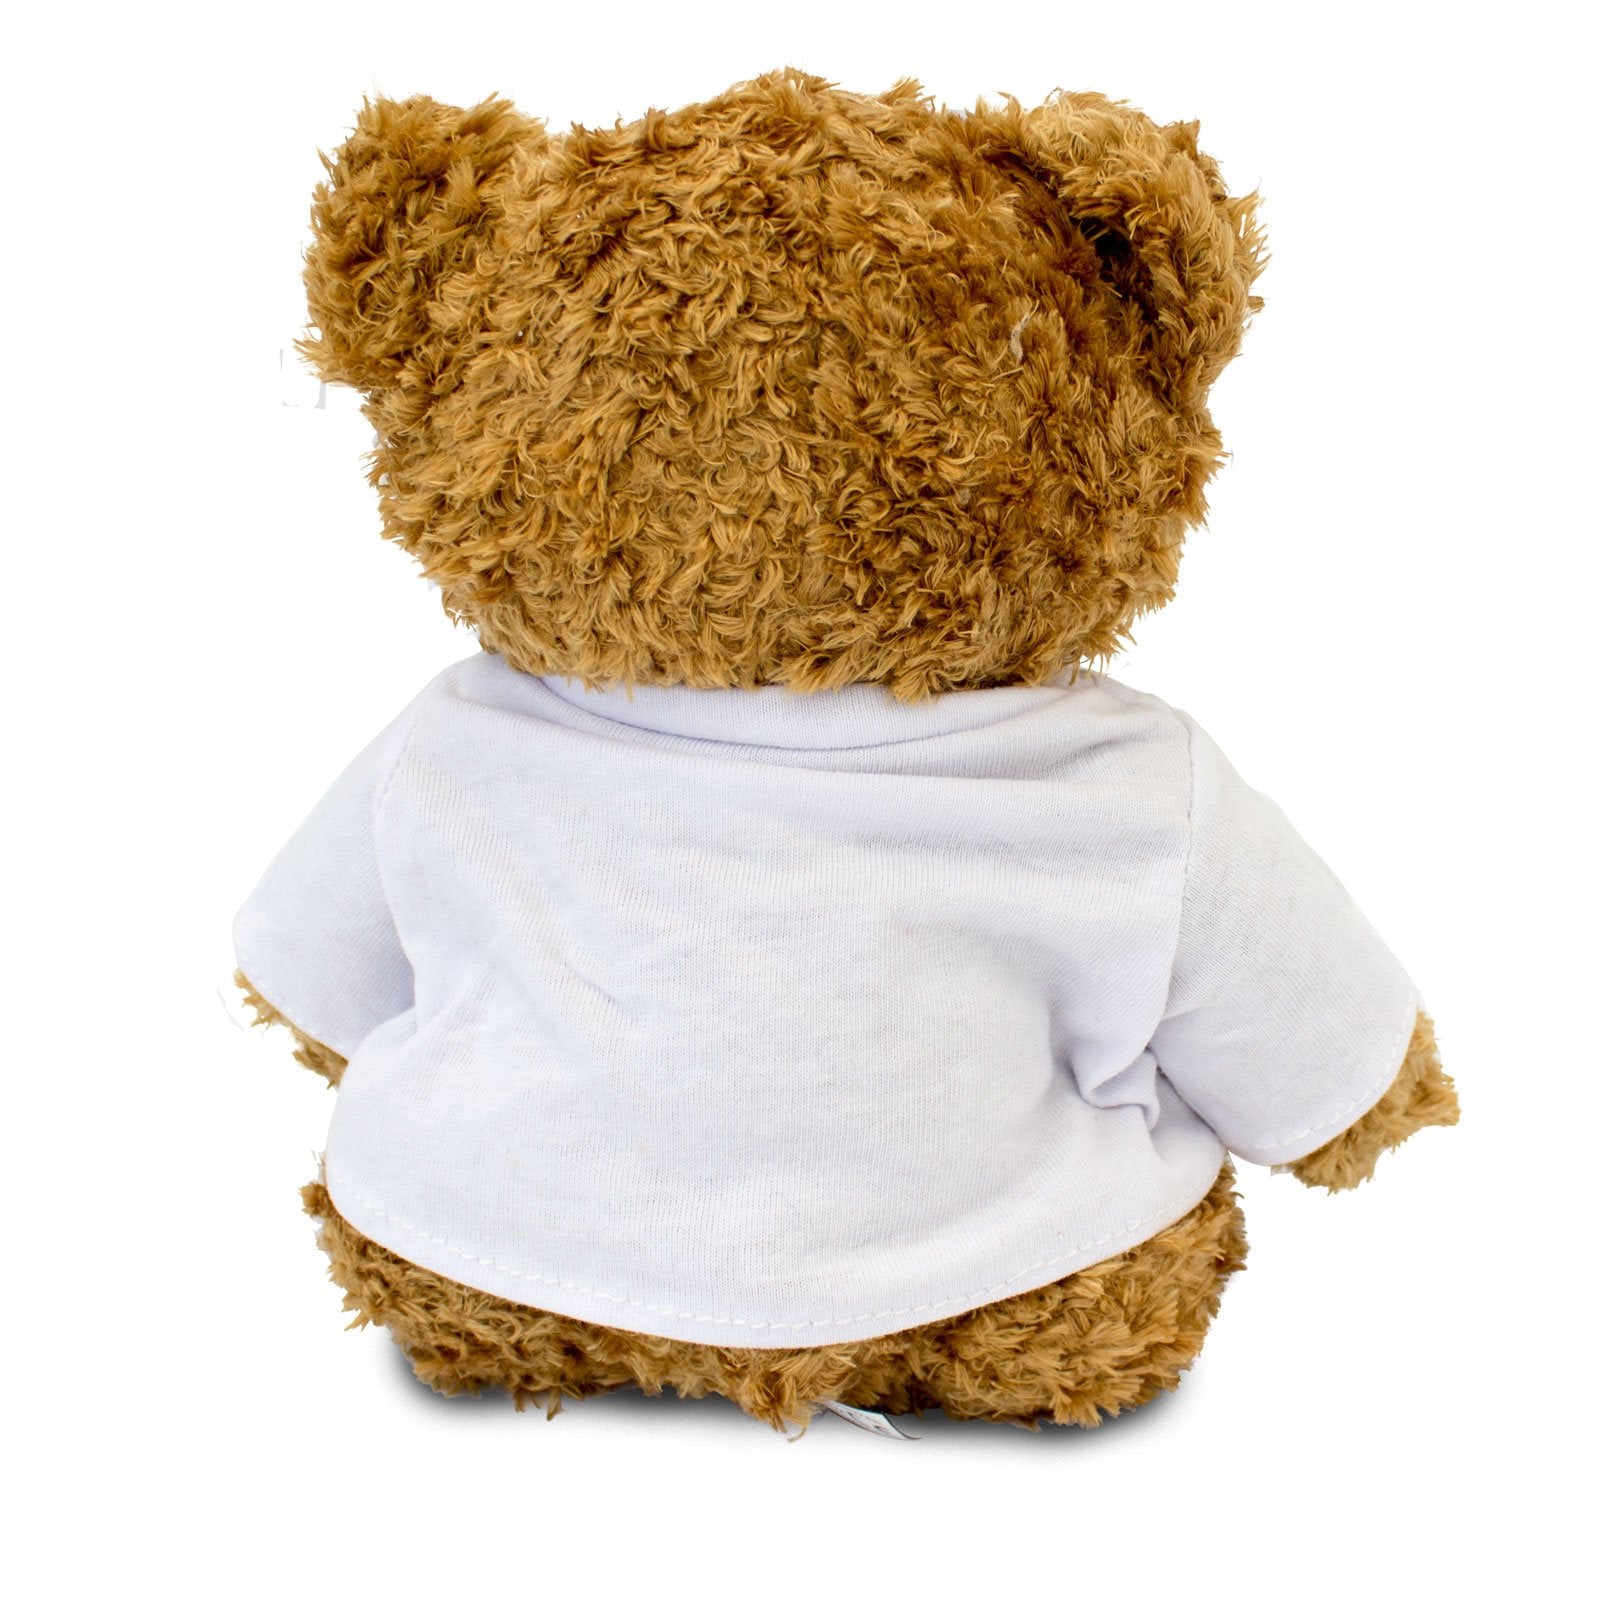 Get Well Soon Charlie - Teddy Bear